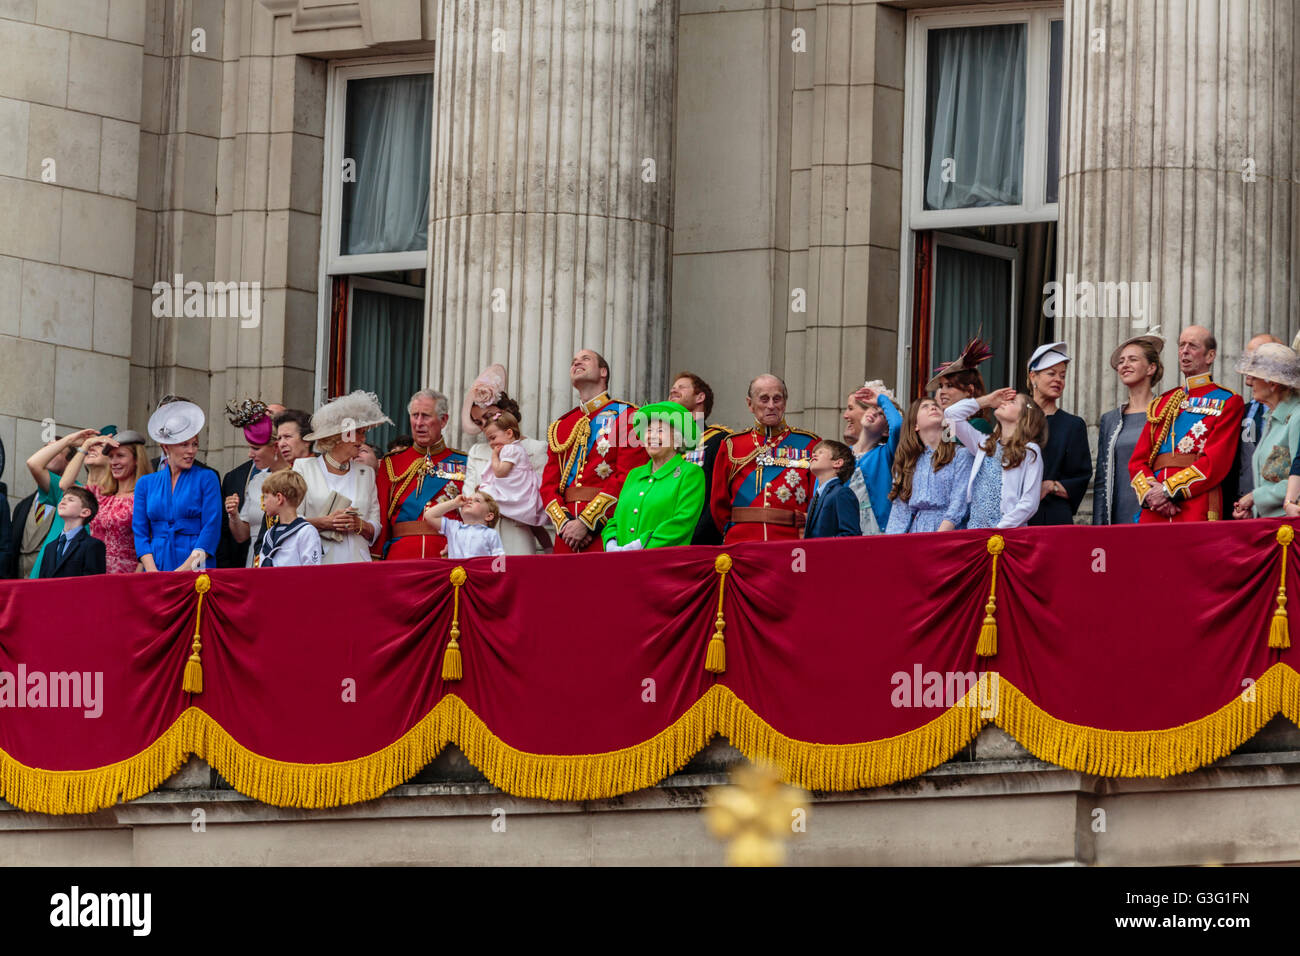 La famille royale célèbre l'anniversaire de la reine sur le balcon de Buckingham Palace Londres Angleterre Royaume-Uni 2016 Banque D'Images